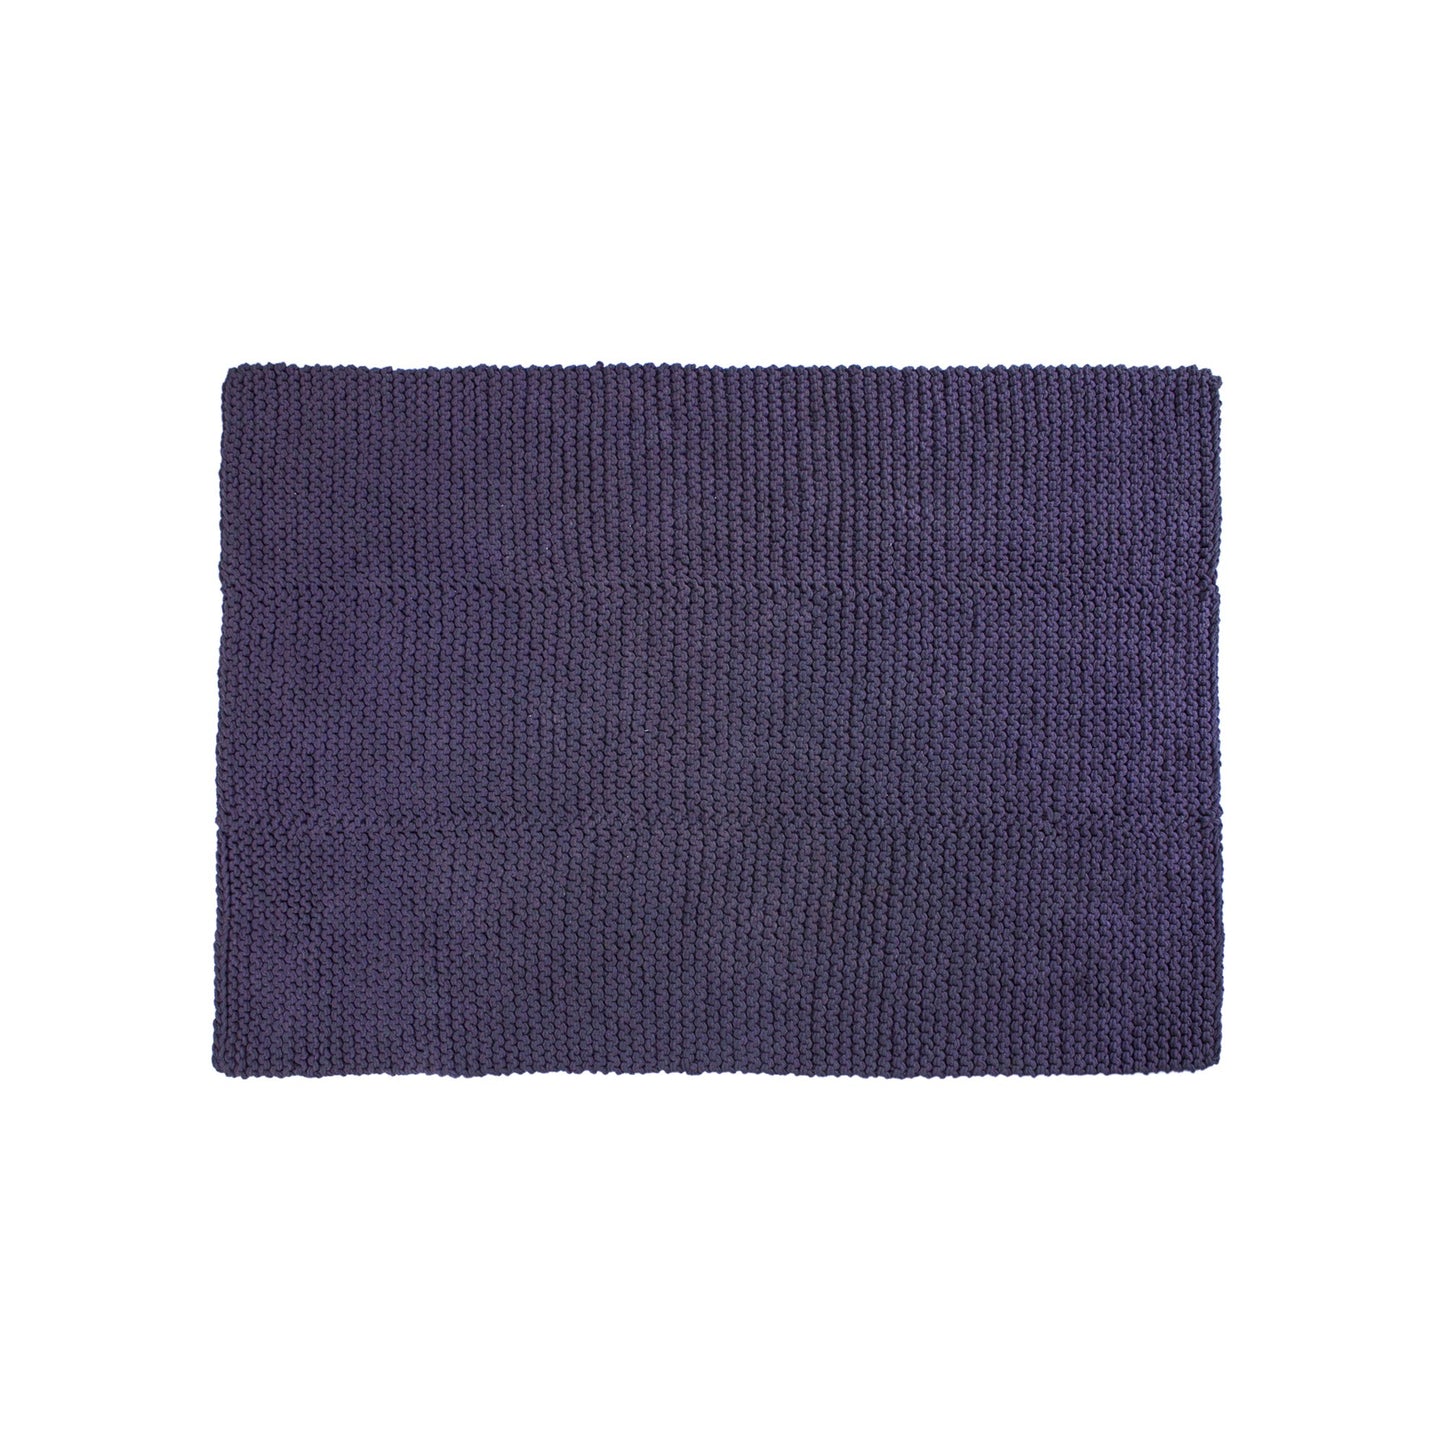 Tapete em tricô artesanal Roxo, com fio 100% algodão. Dimensões: Largura - 150cm; Comprimento - 200cm. 